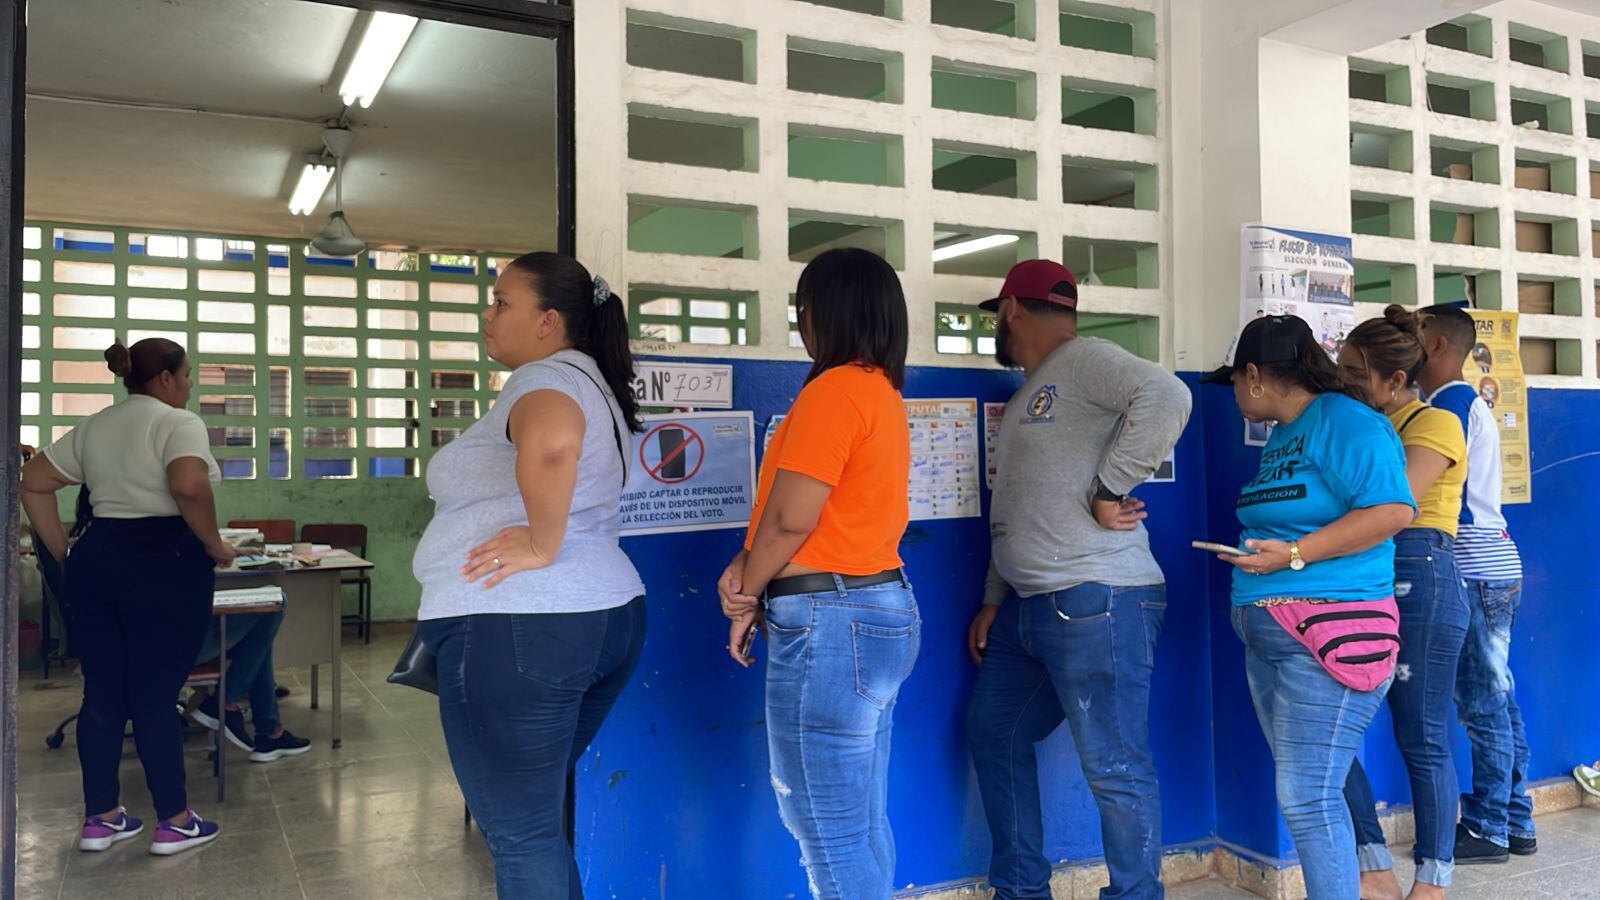 El centro de votación en la escuela José Maria Barranco cerró alas 4:00 p.m., excepto una mesa, donde hay 8 personas en fila. LA PRENSA/Ereida Prietto